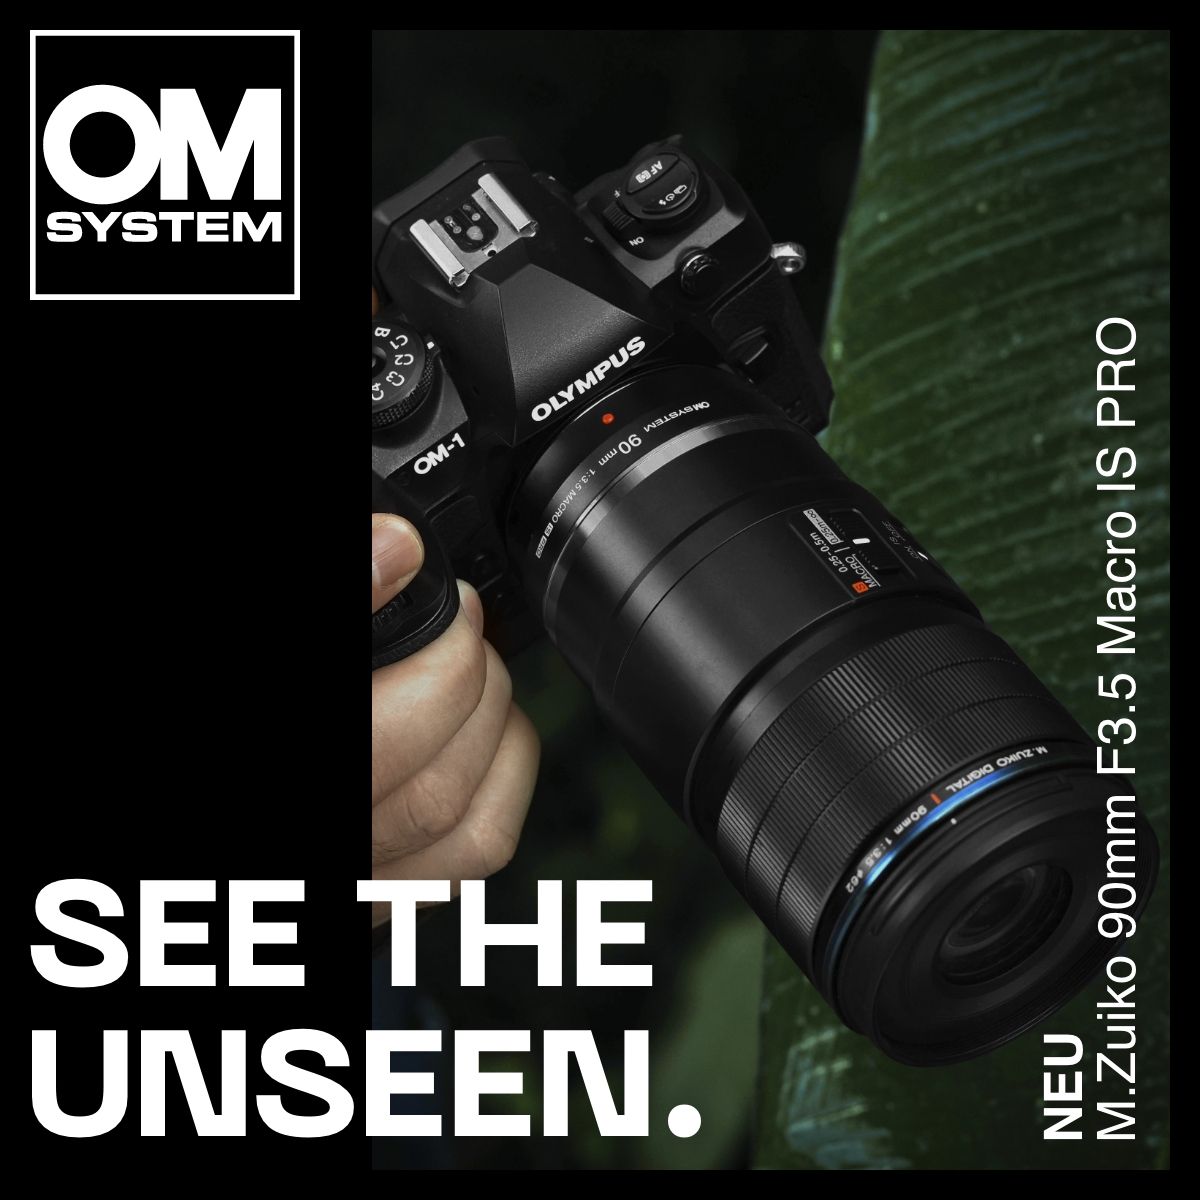 OM System M.Zuiko Digital ED 90mm f/3.5 Macro IS PRO – Foto Lamprechter